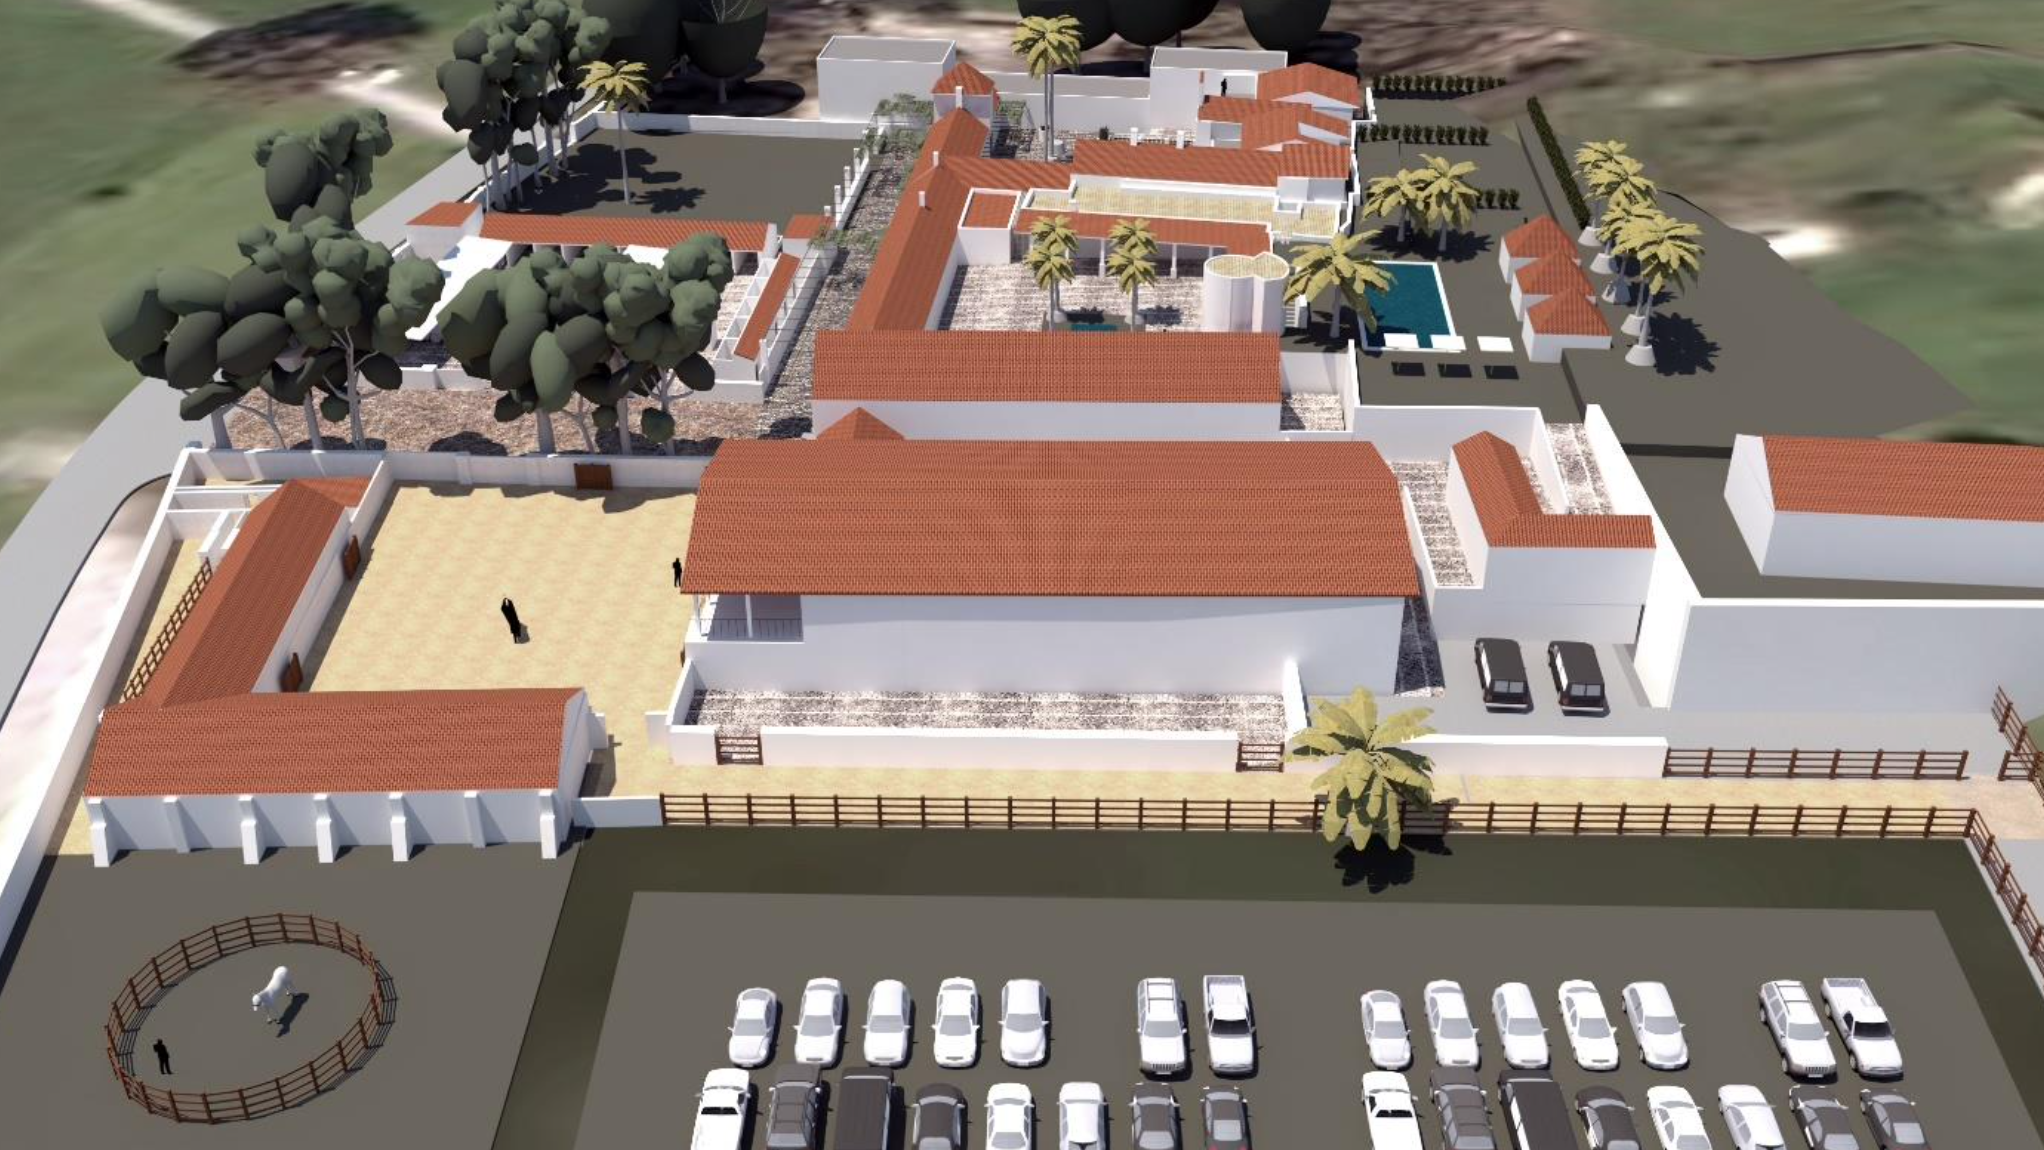 Recreación virtual del complejo turístico La Palmosilla, incluida en la memoria del proyecto remitida a la Junta de Andalucía.